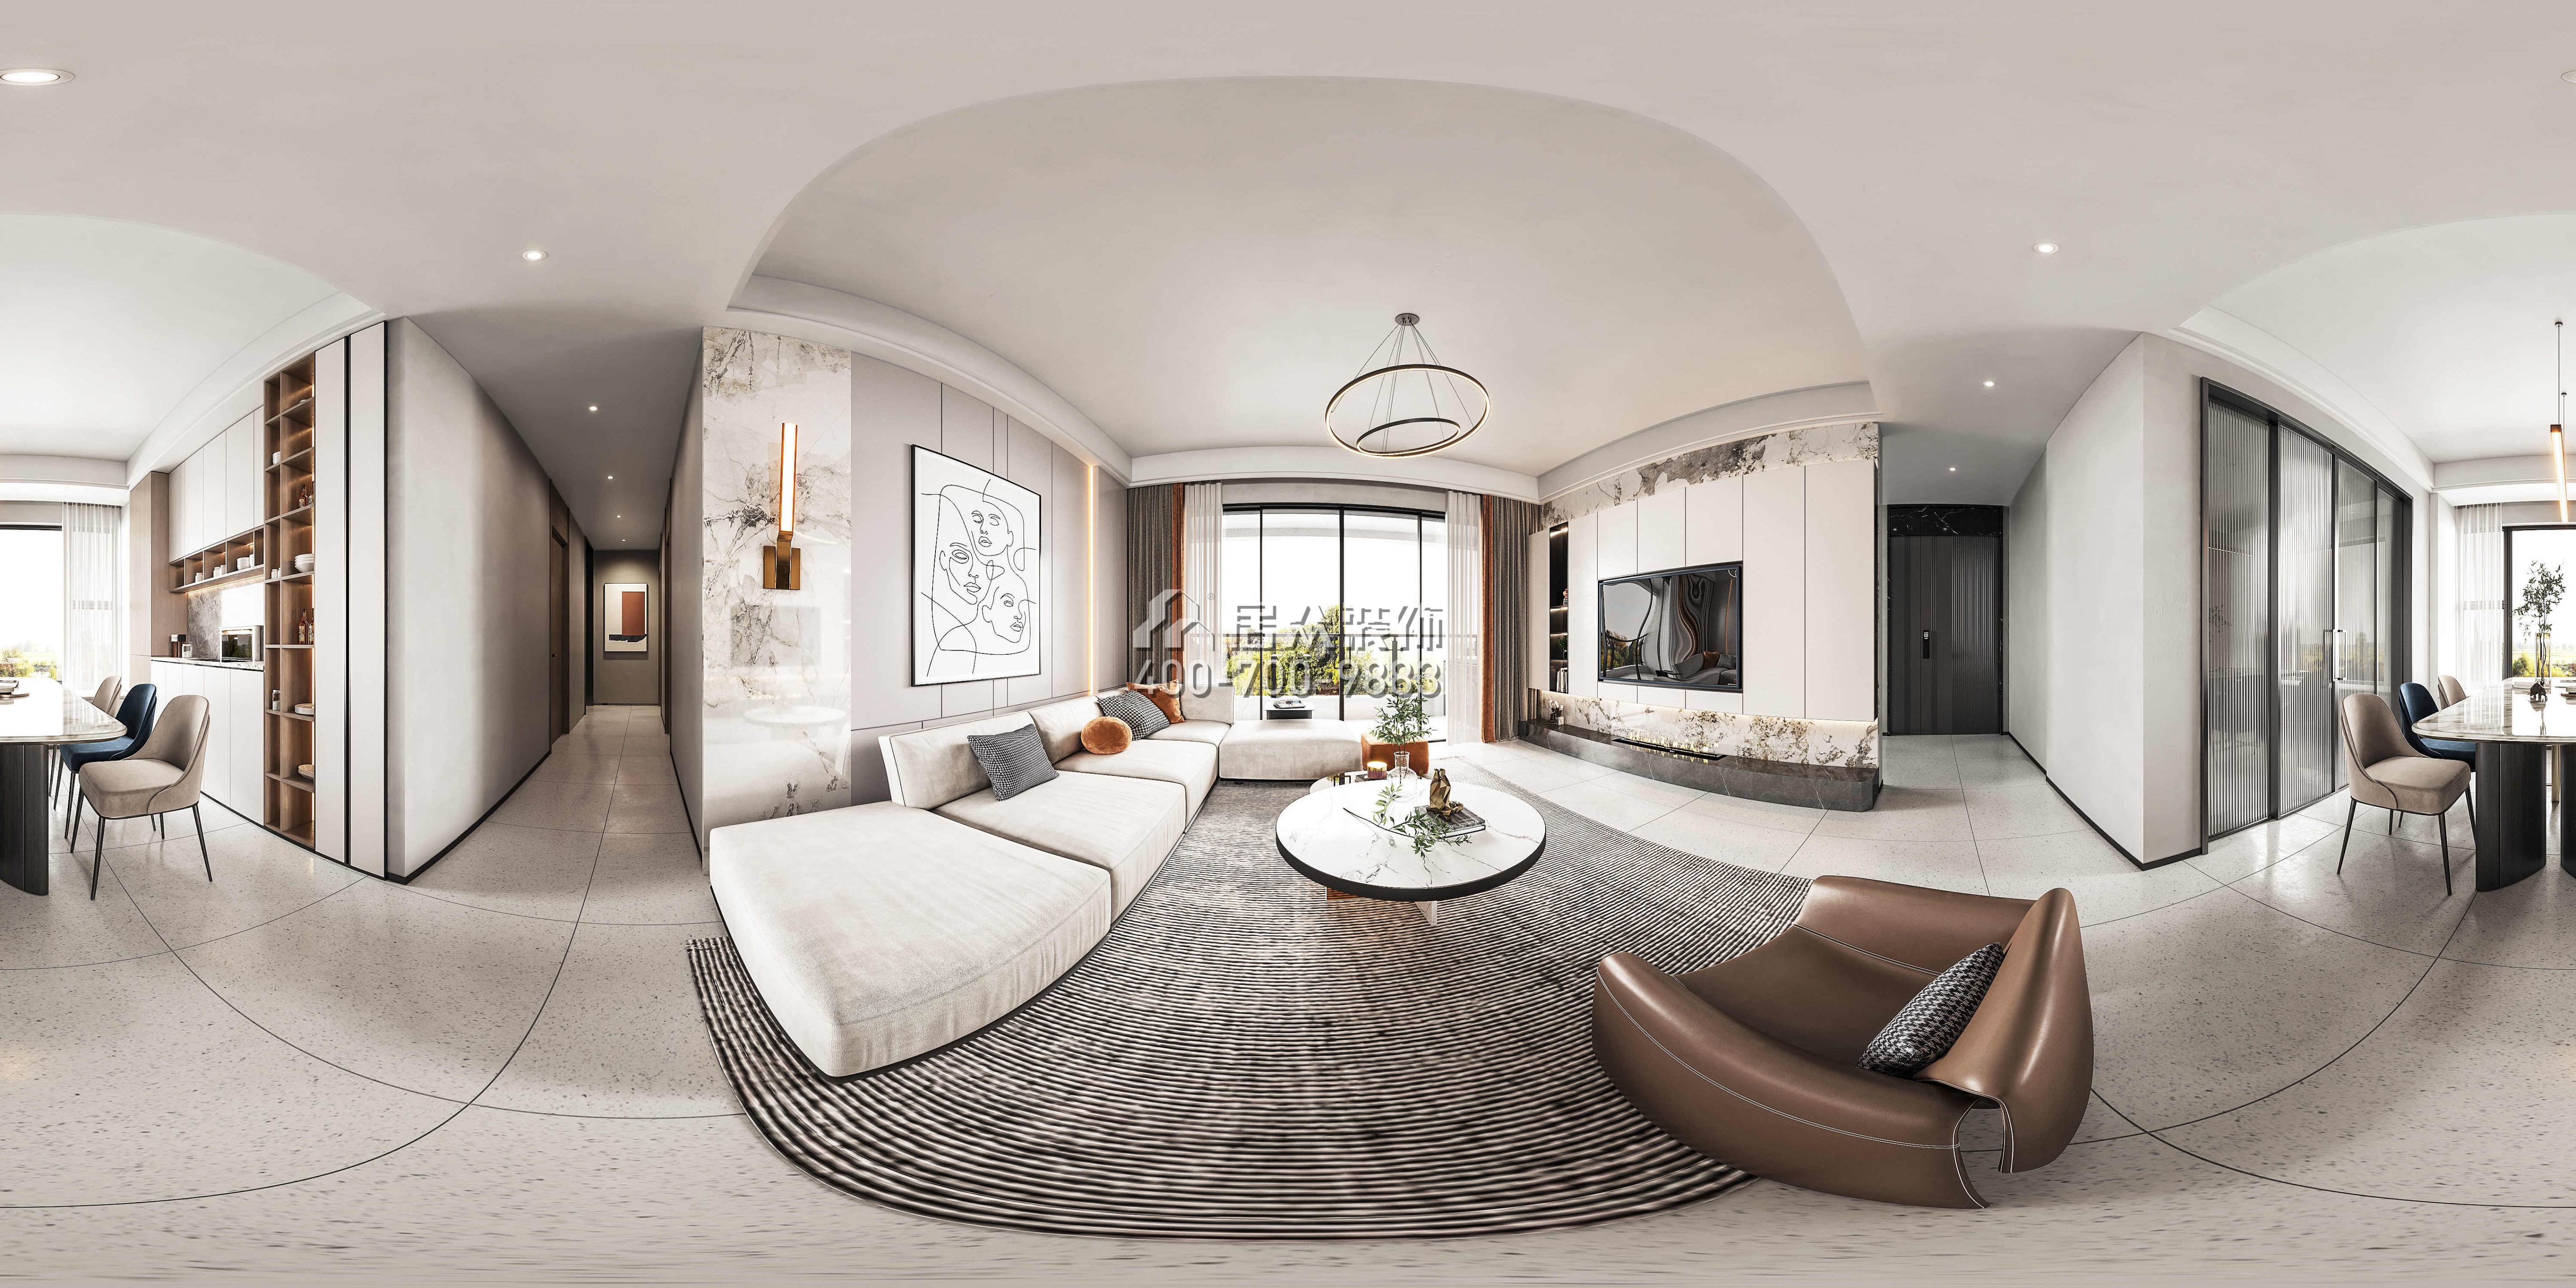 華發國際海岸134平方米現代簡約風格平層戶型客廳裝修效果圖